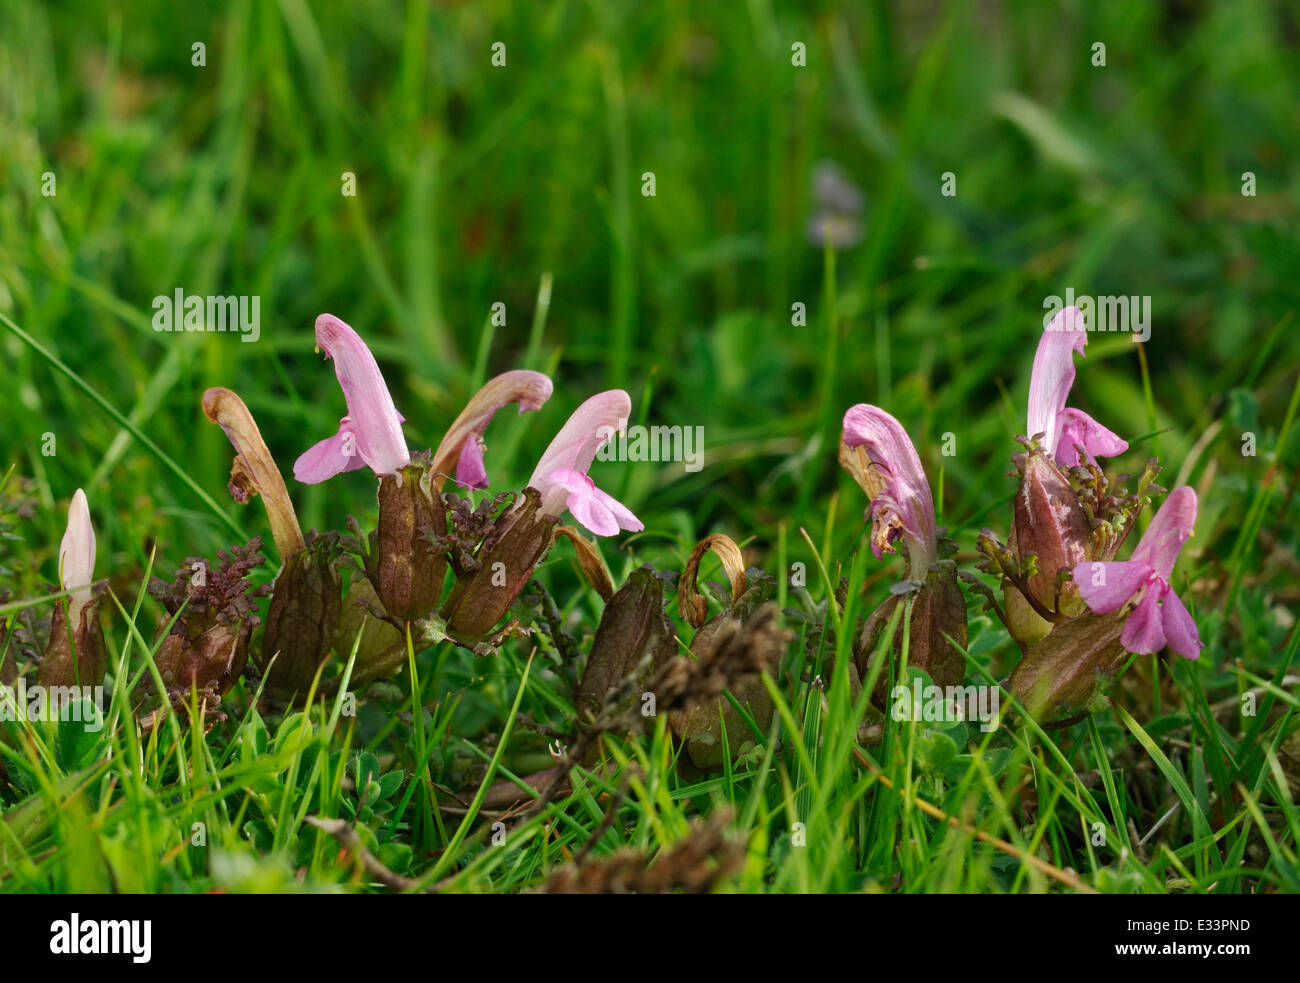 Lousewort - Pedicularis sylvatica Pink Parasitic Heathland Plant Stock Photo